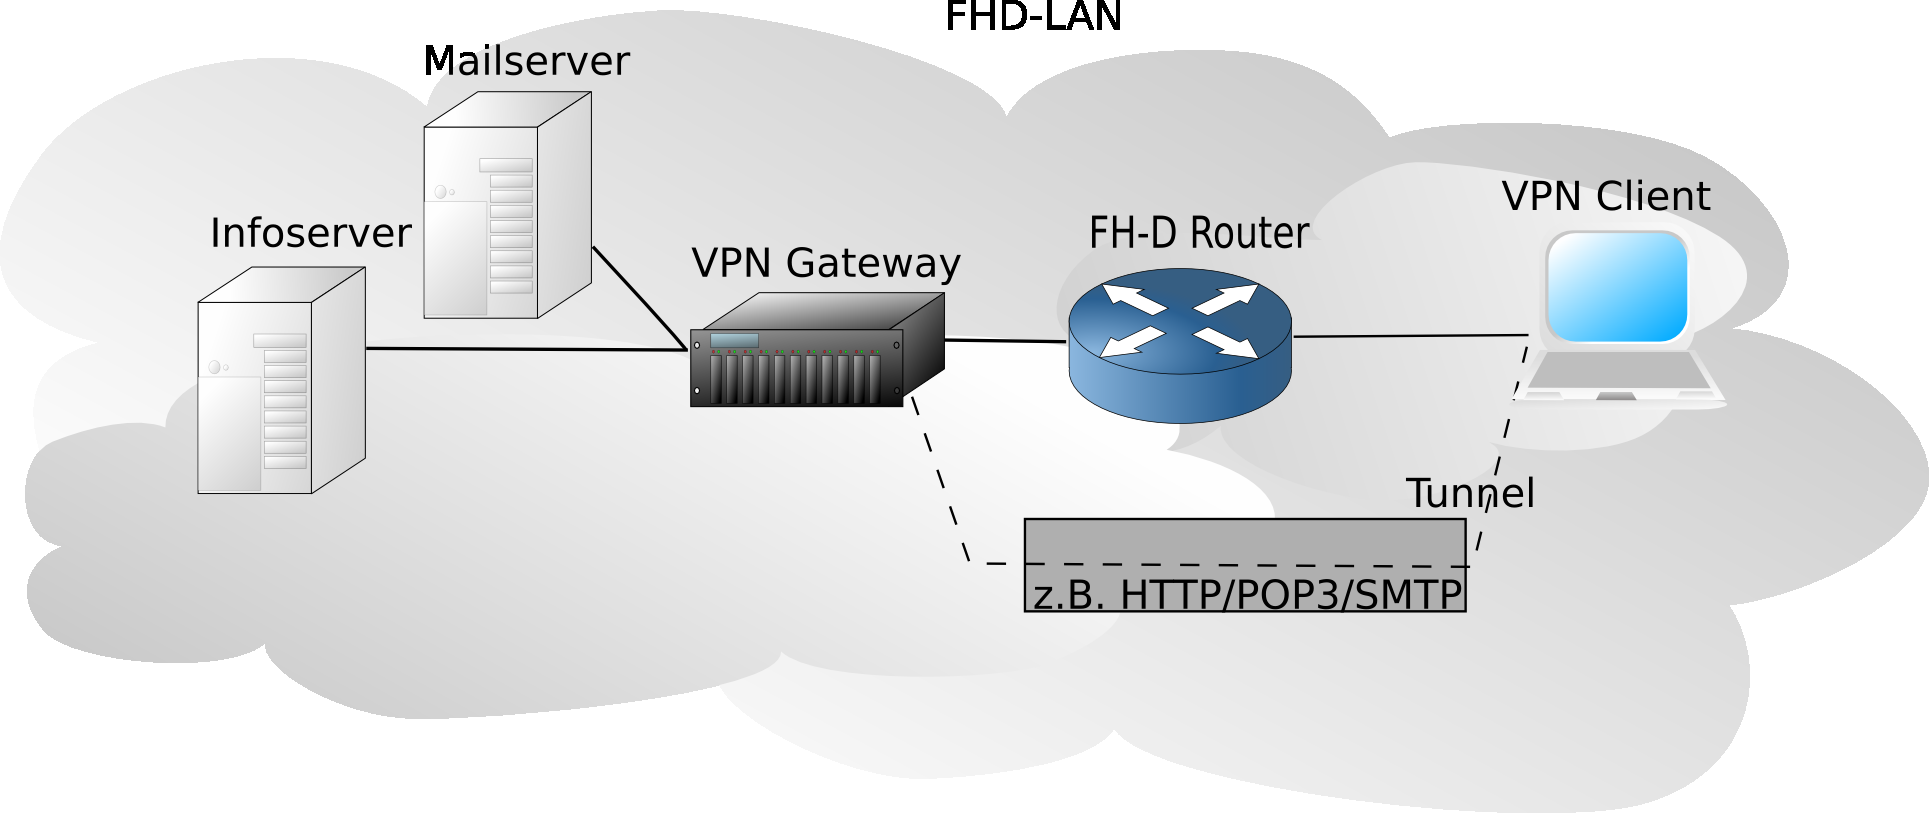 4.3 FH-D VPN Gateway 4 VIRTUAL PRIVATE NETWORK (VPN) Abbildung 41: interne Nutzung des VPN Gateways 4.3.1. Testplattform Dem Autor wurde von der Datenverarbeitungszentrale (DVZ) ein PC zur Demonstration des VPN Gateways bereitgestellt.